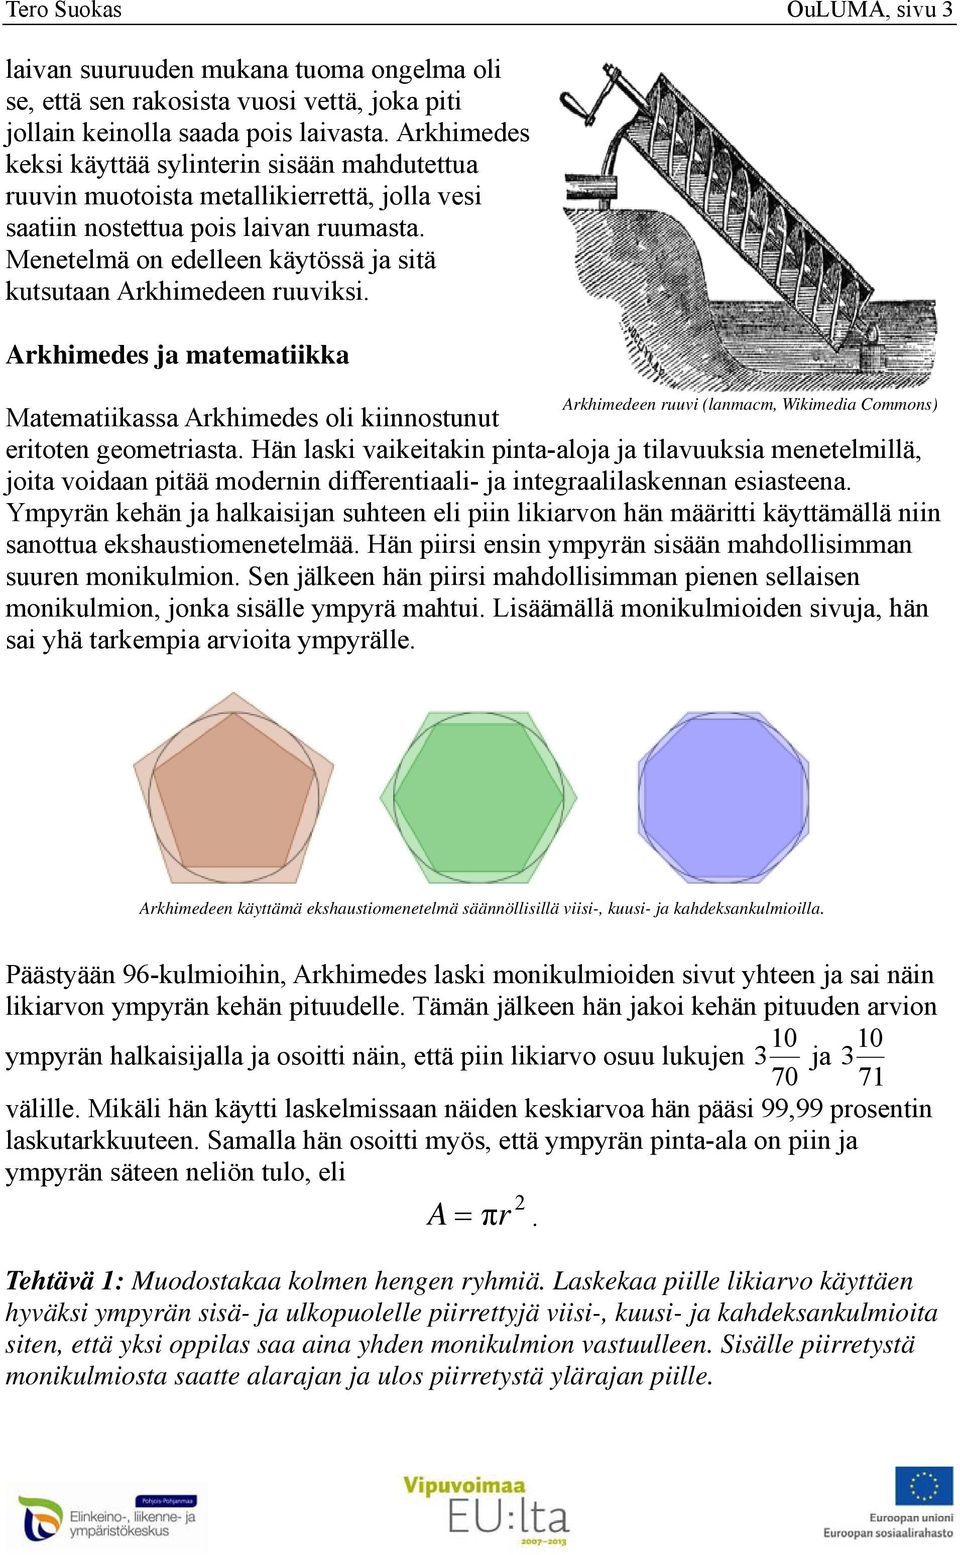 Arkhimedeen ruuvi (lanmacm Wikimedia Commons) Matematiikassa Arkhimedes oli kiinnostunut eritoten geometriasta Hän laski vaikeitakin pinta-aloja ja tilavuuksia menetelmillä joita voidaan pitää